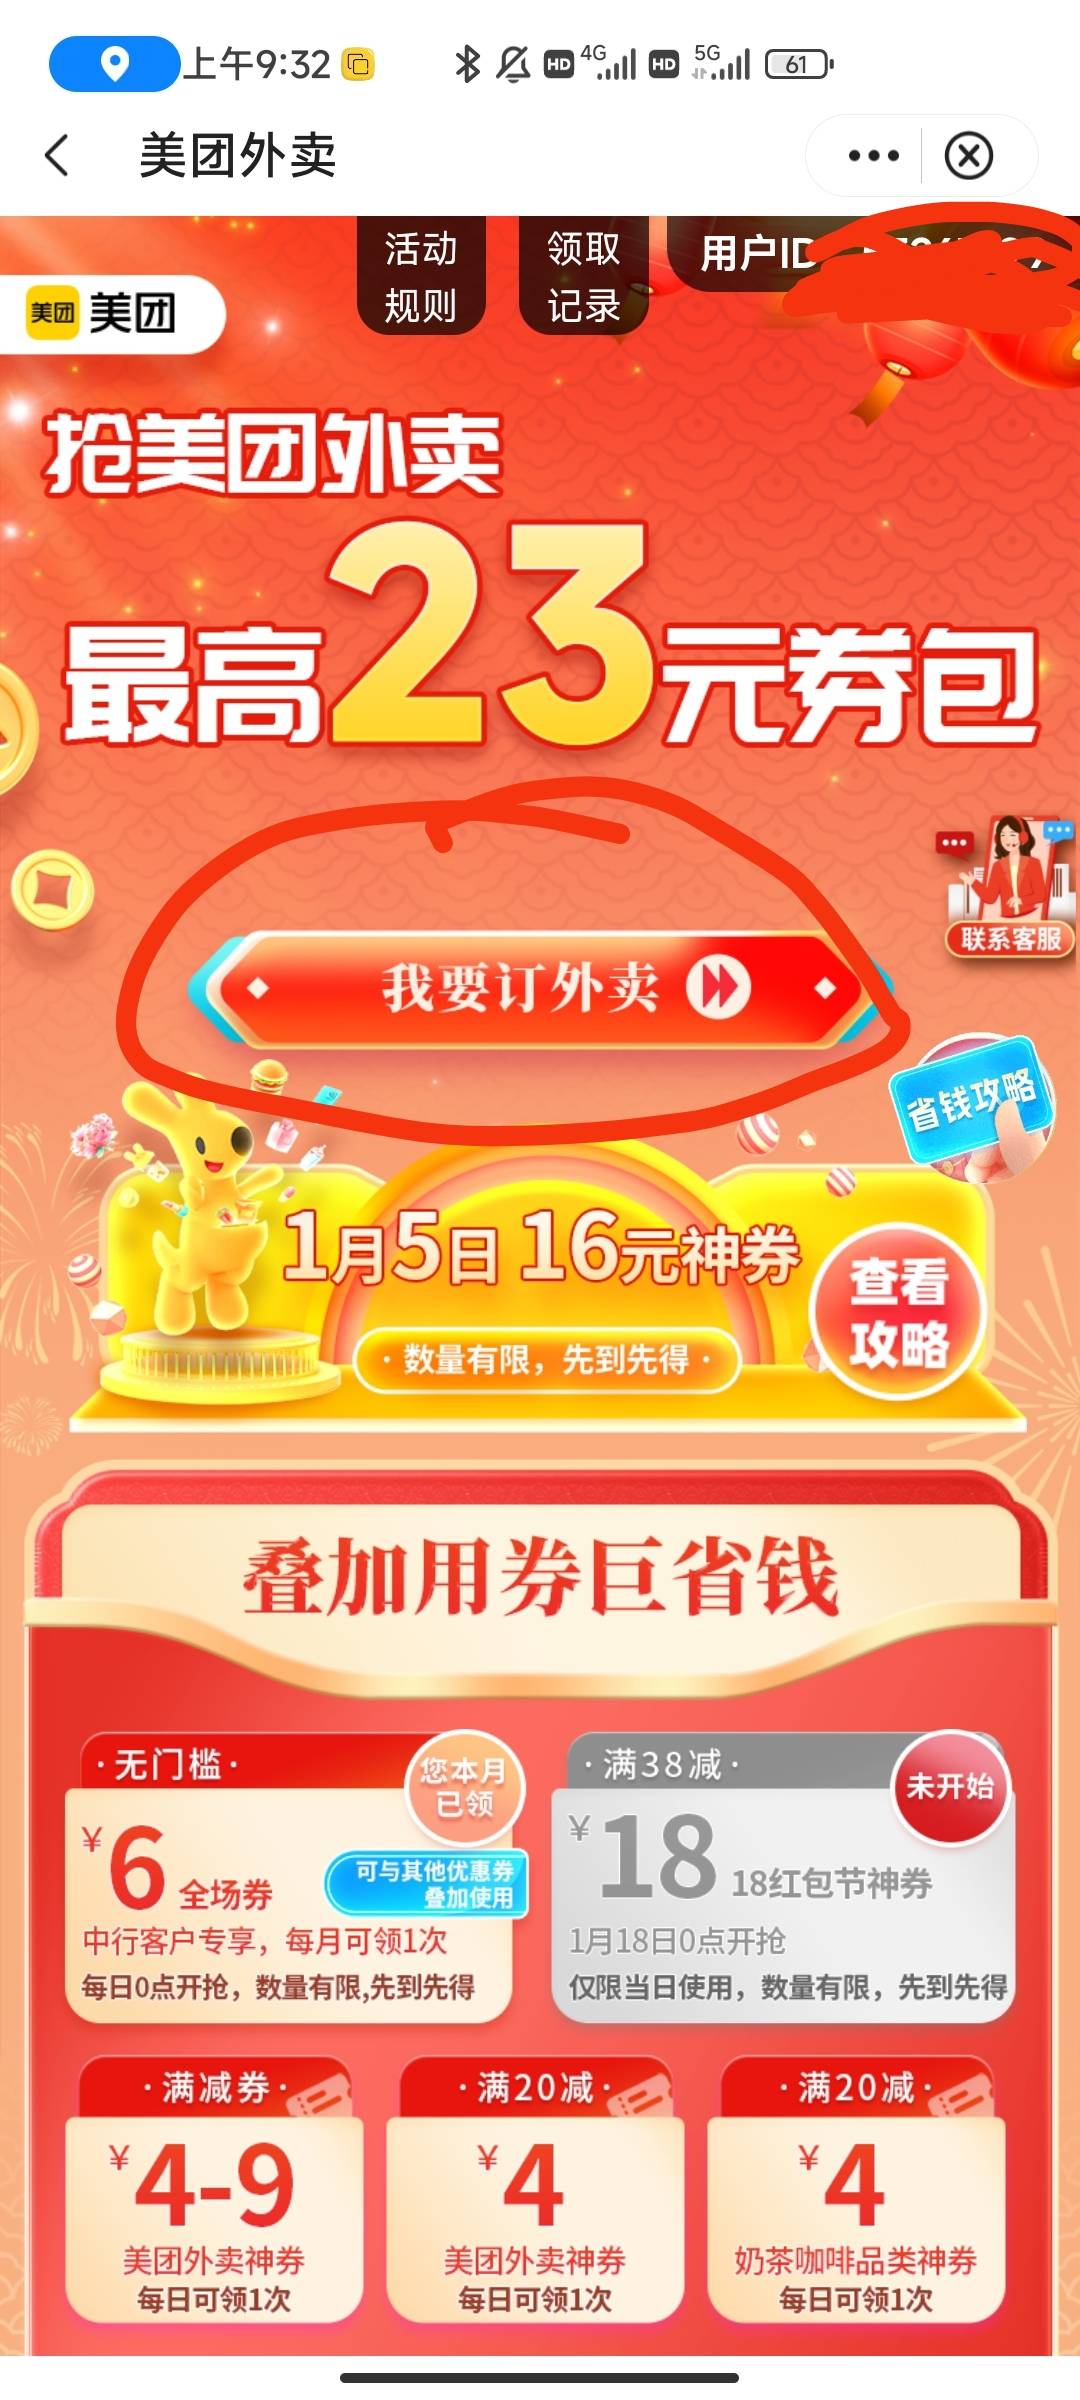 中国银行app，生活，选美团，今天有36_16的券。没吃饭的去啊，建行生活已经是过去式了42 / 作者:半夏如果 / 